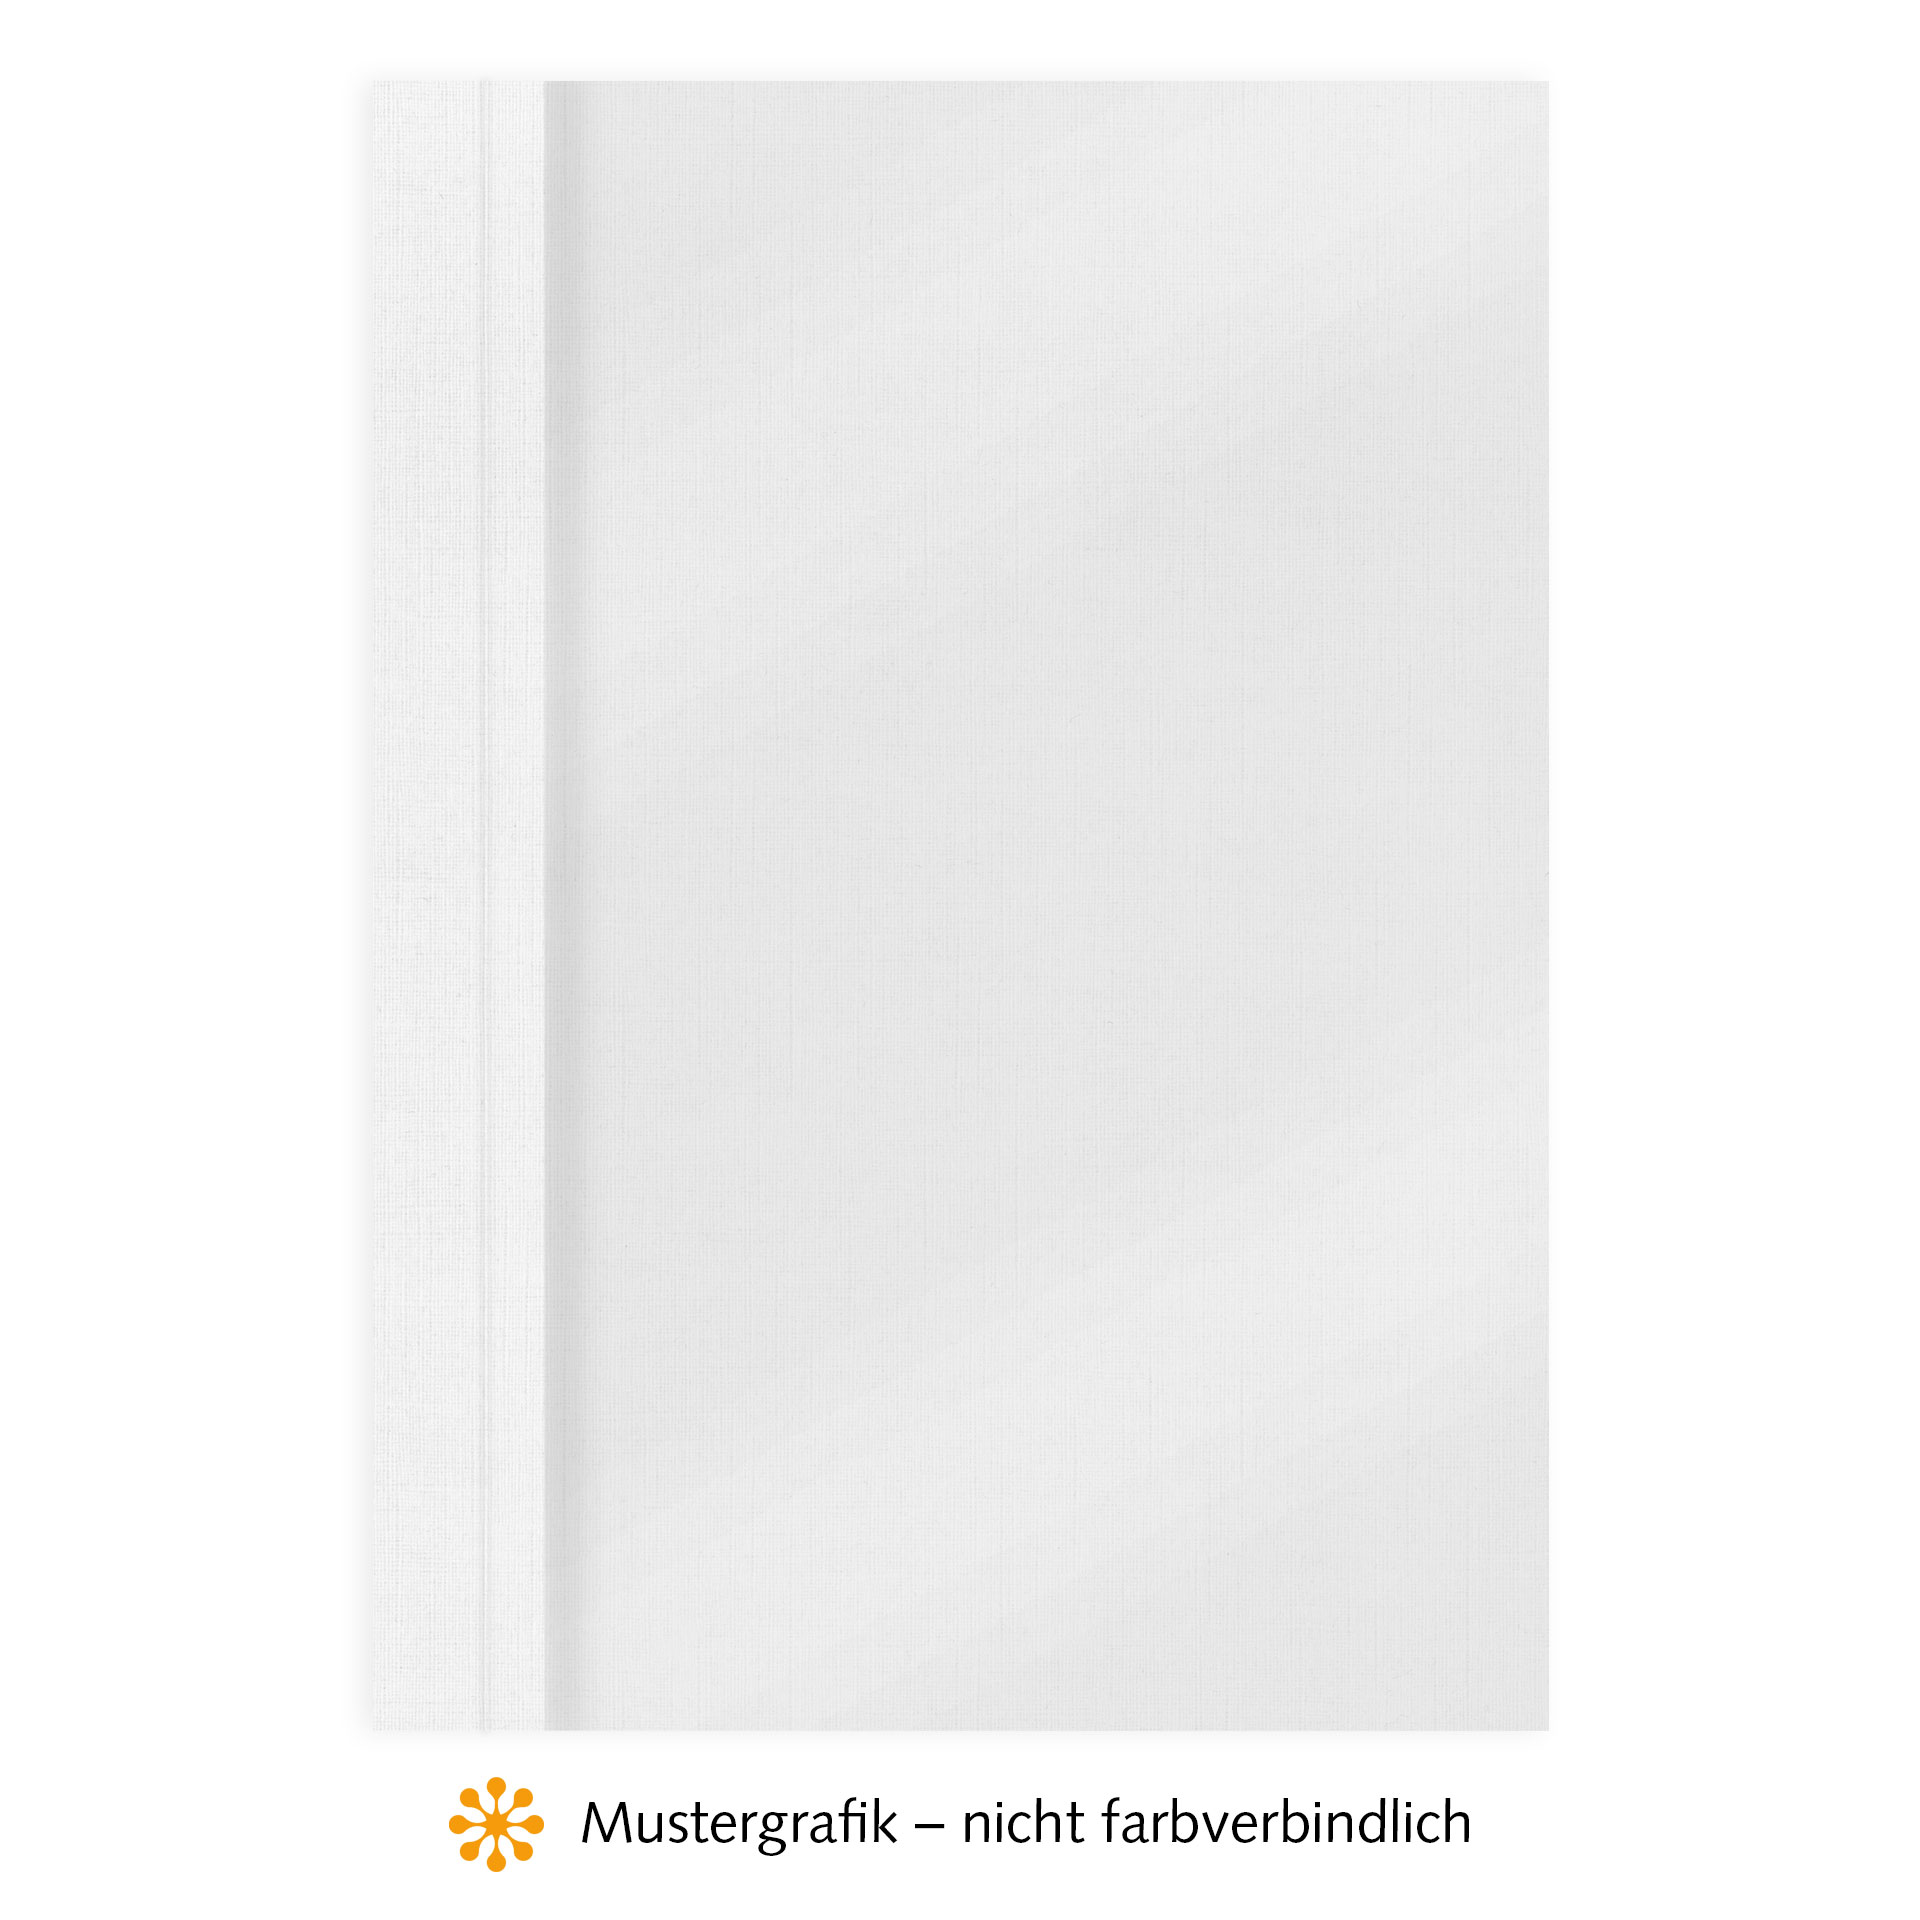 Ösenmappen DUO Cover, Vorderseite Folie MATT transparent, Rückseite Karton Leinen, Weiß, 6 mm, 51 bis 60 Blatt